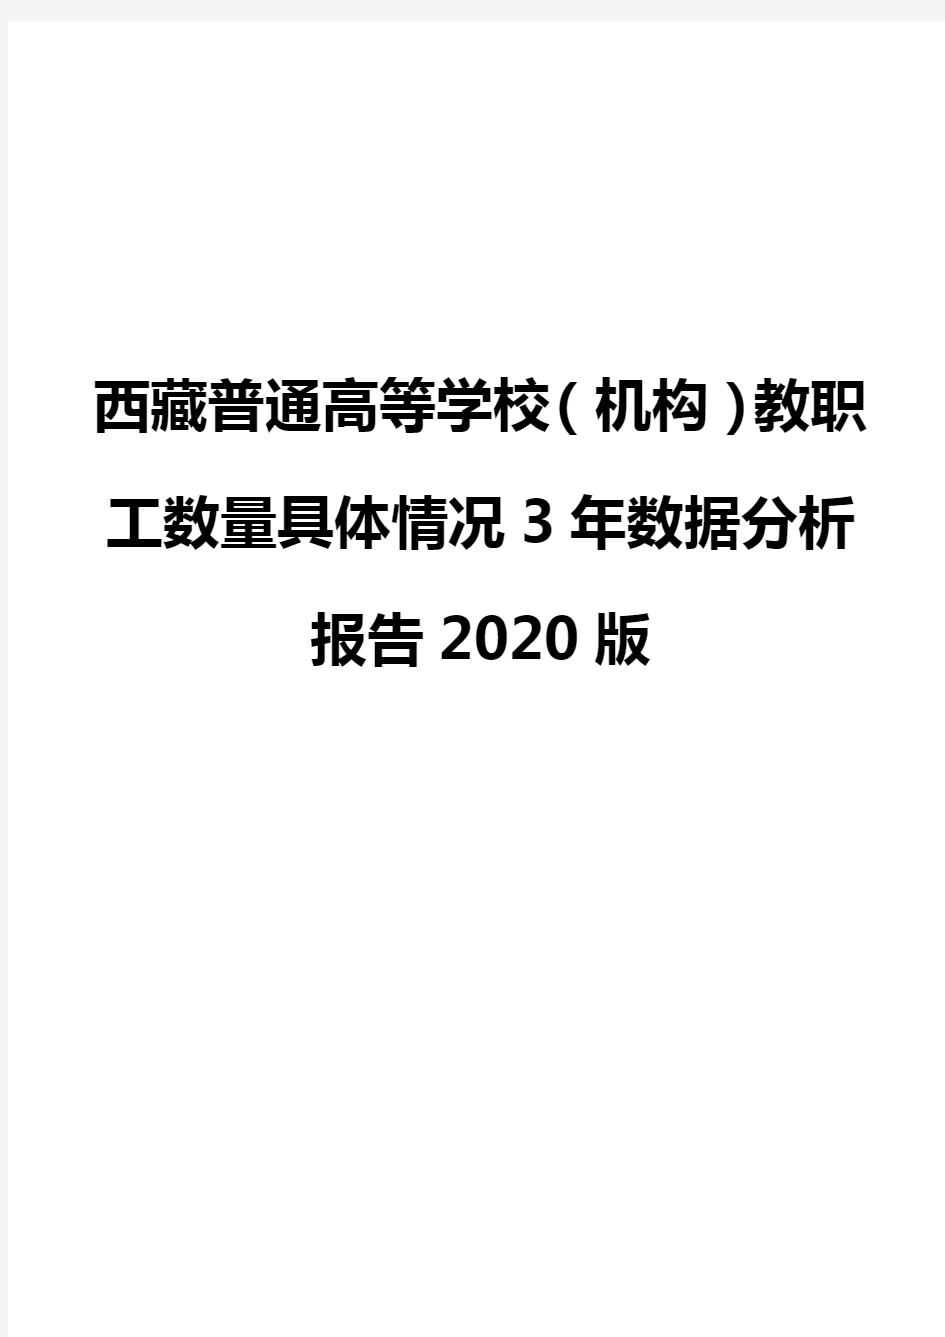 西藏普通高等学校(机构)教职工数量具体情况3年数据分析报告2020版